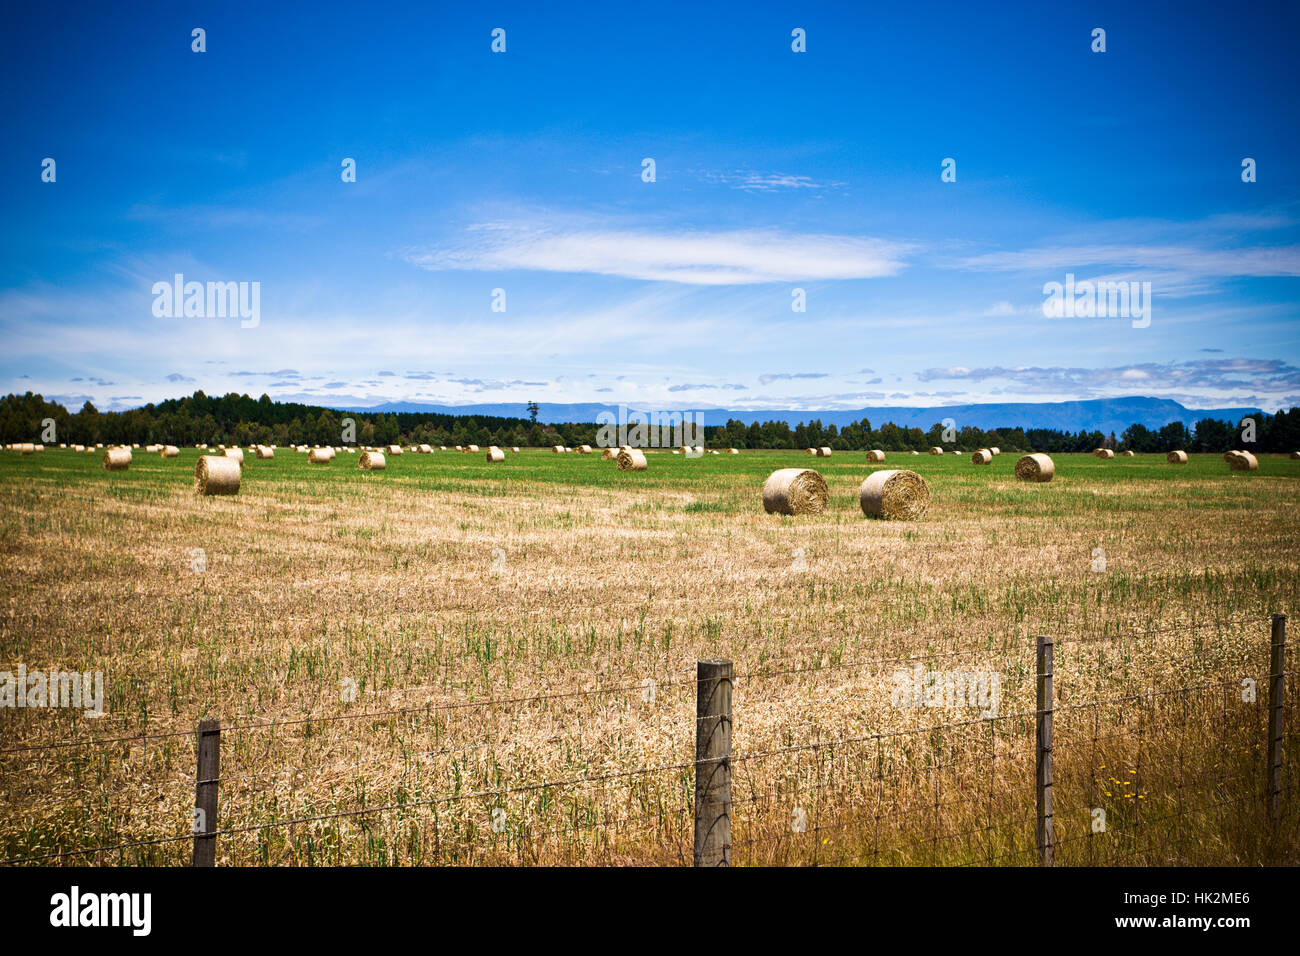 agriculture, farming, field, farm, barley, agriculture, farming, field, farm, Stock Photo